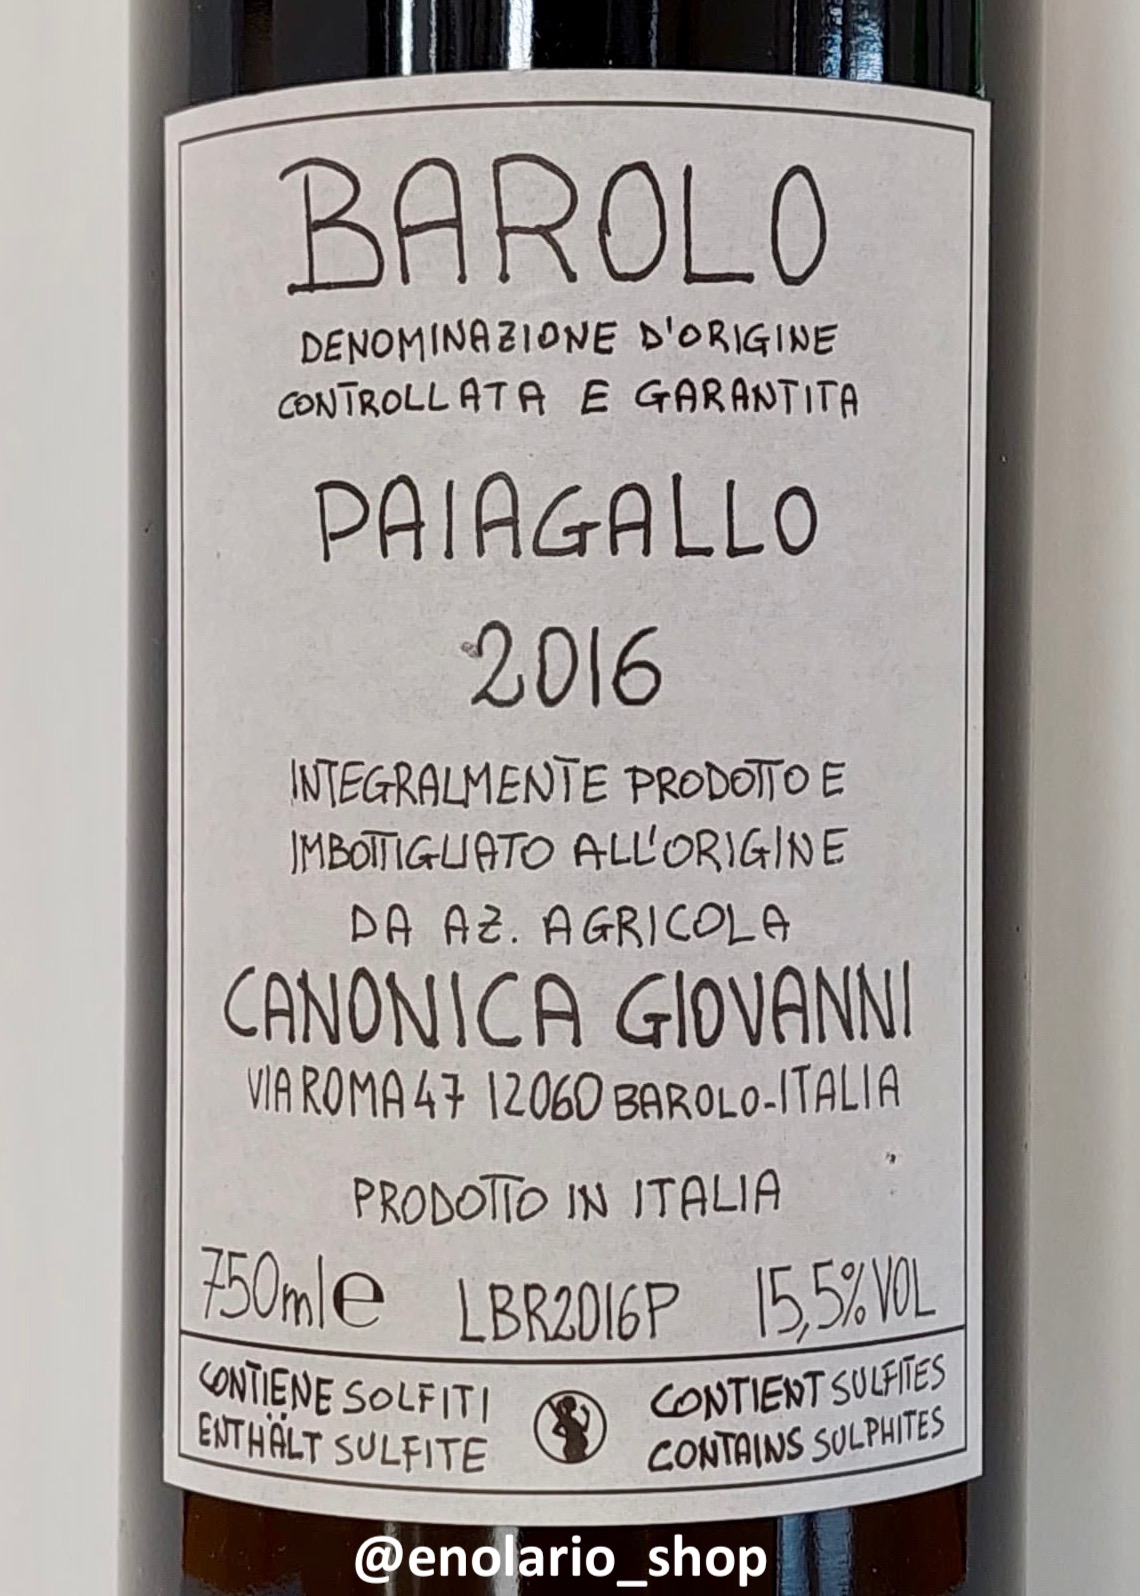 Giovanni Canonica Barolo Paiagallo 2016